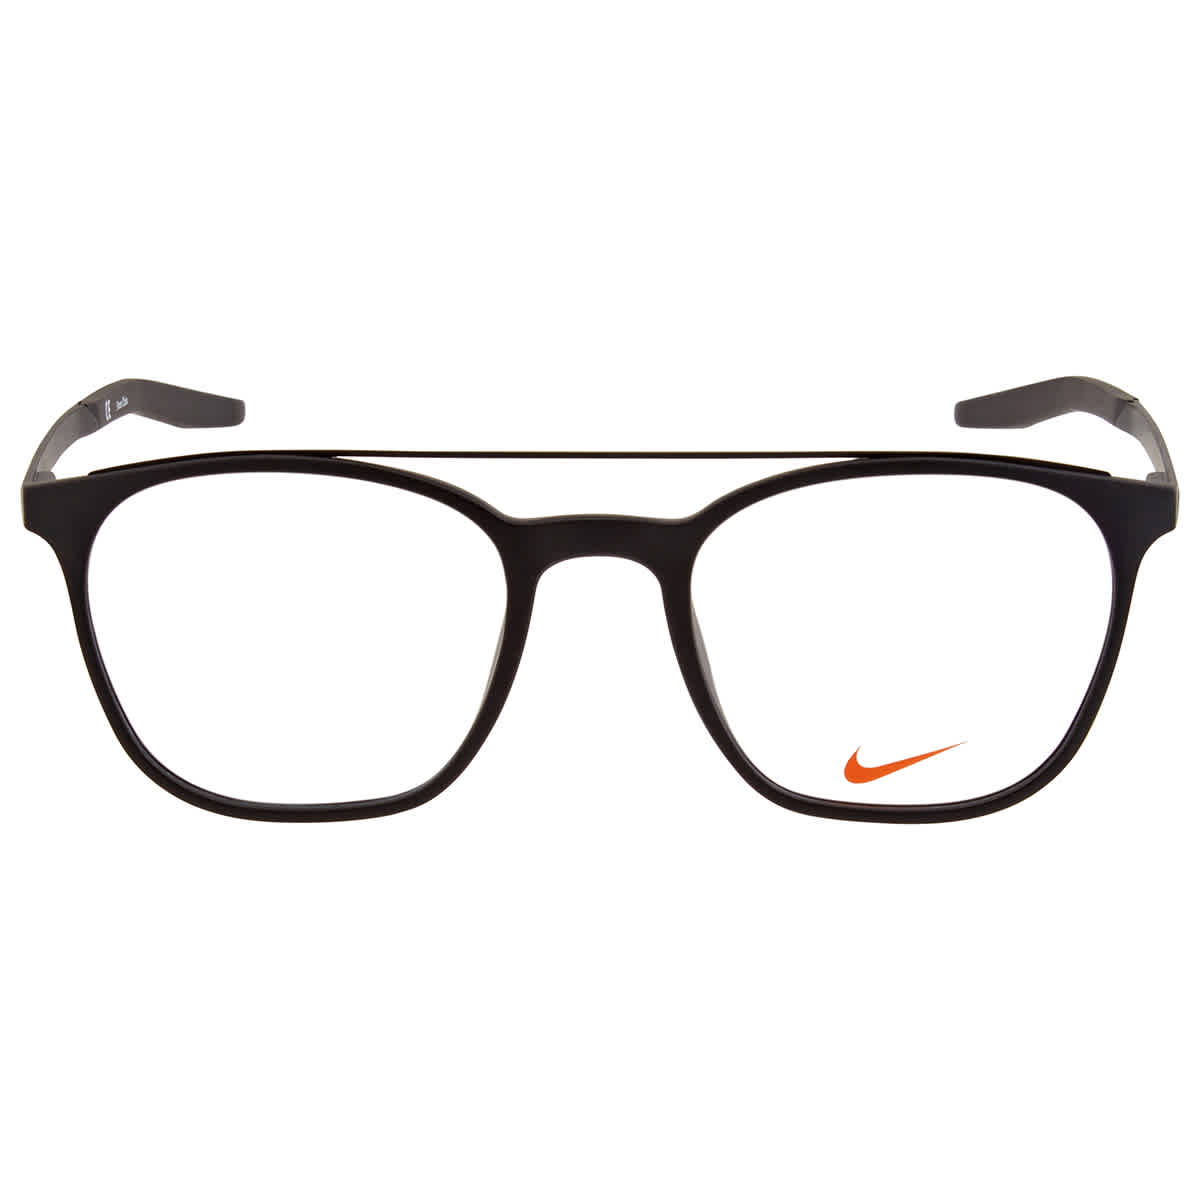 Nike NIKE 7281 1 Unisex Full Rim Black Plastic Frame Eyeglasses - image 1 of 2